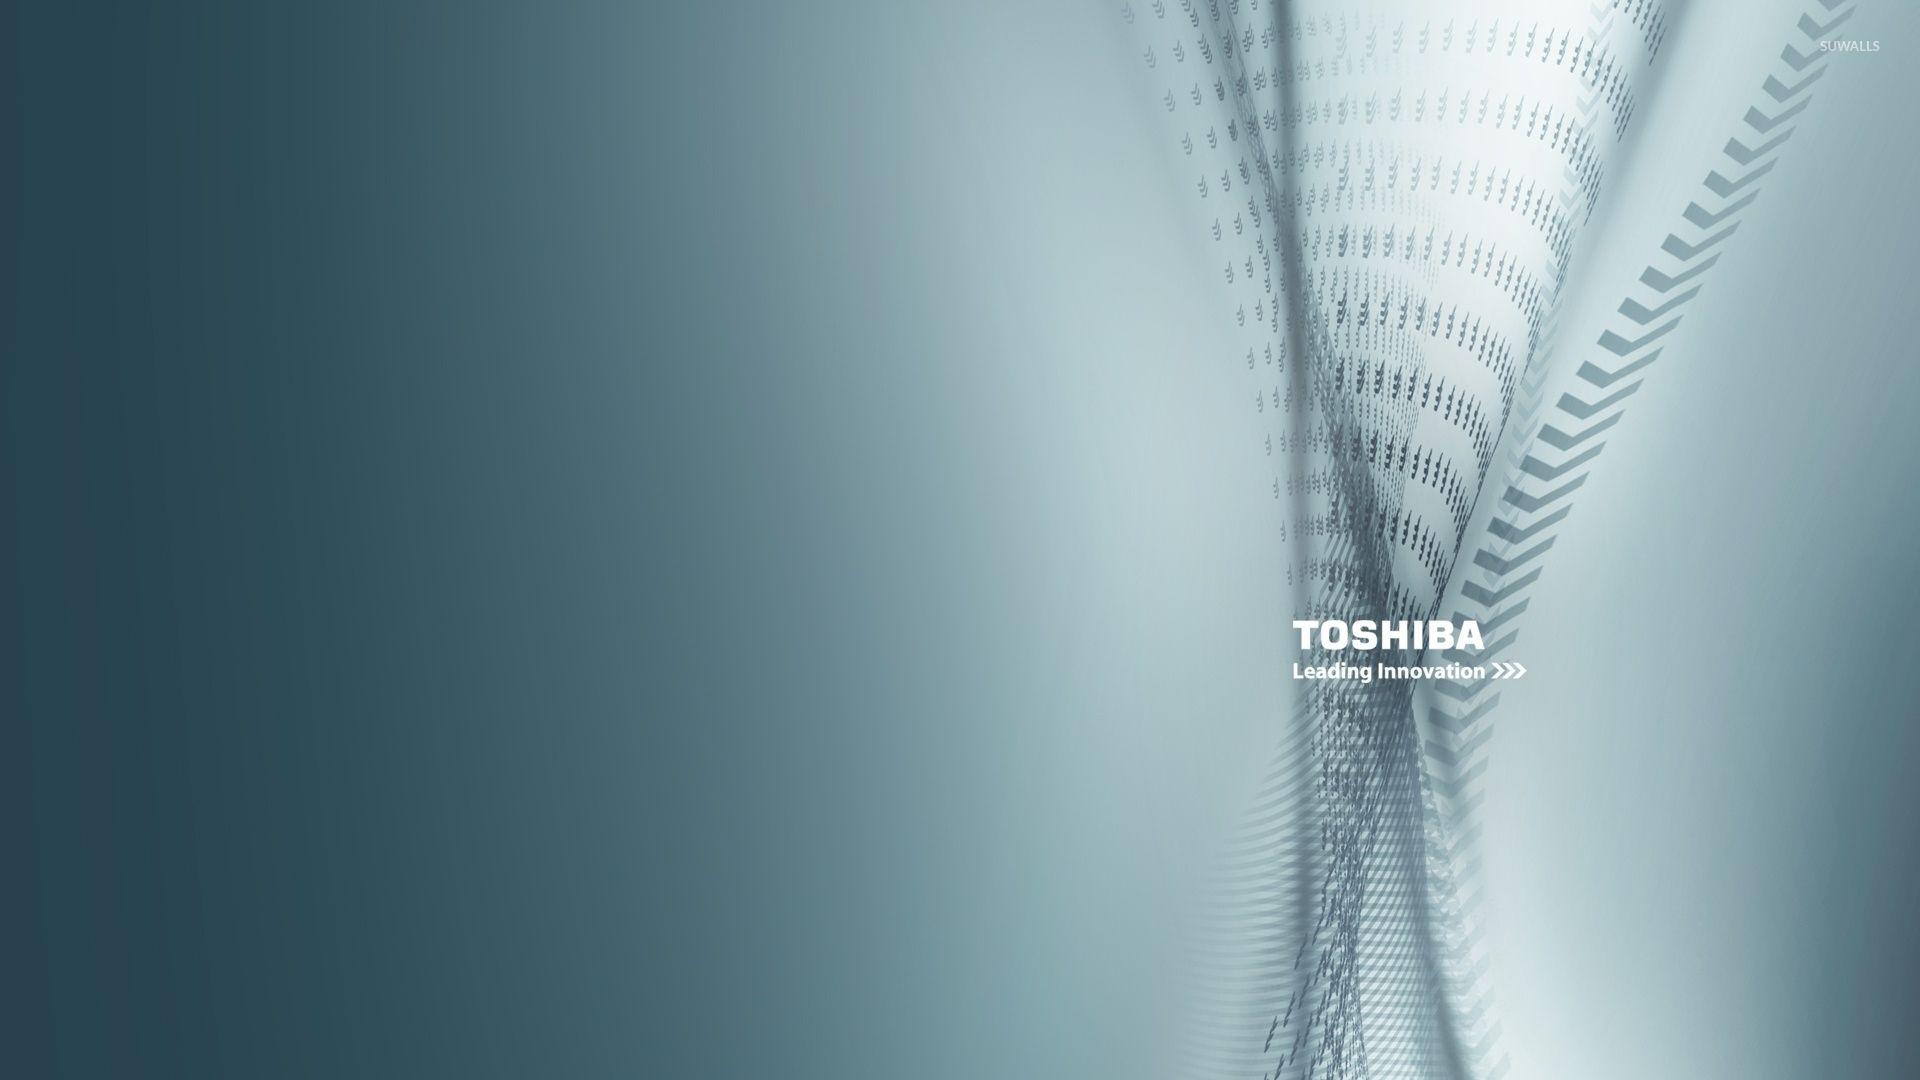 Toshiba innovation wallpaper wallpaper